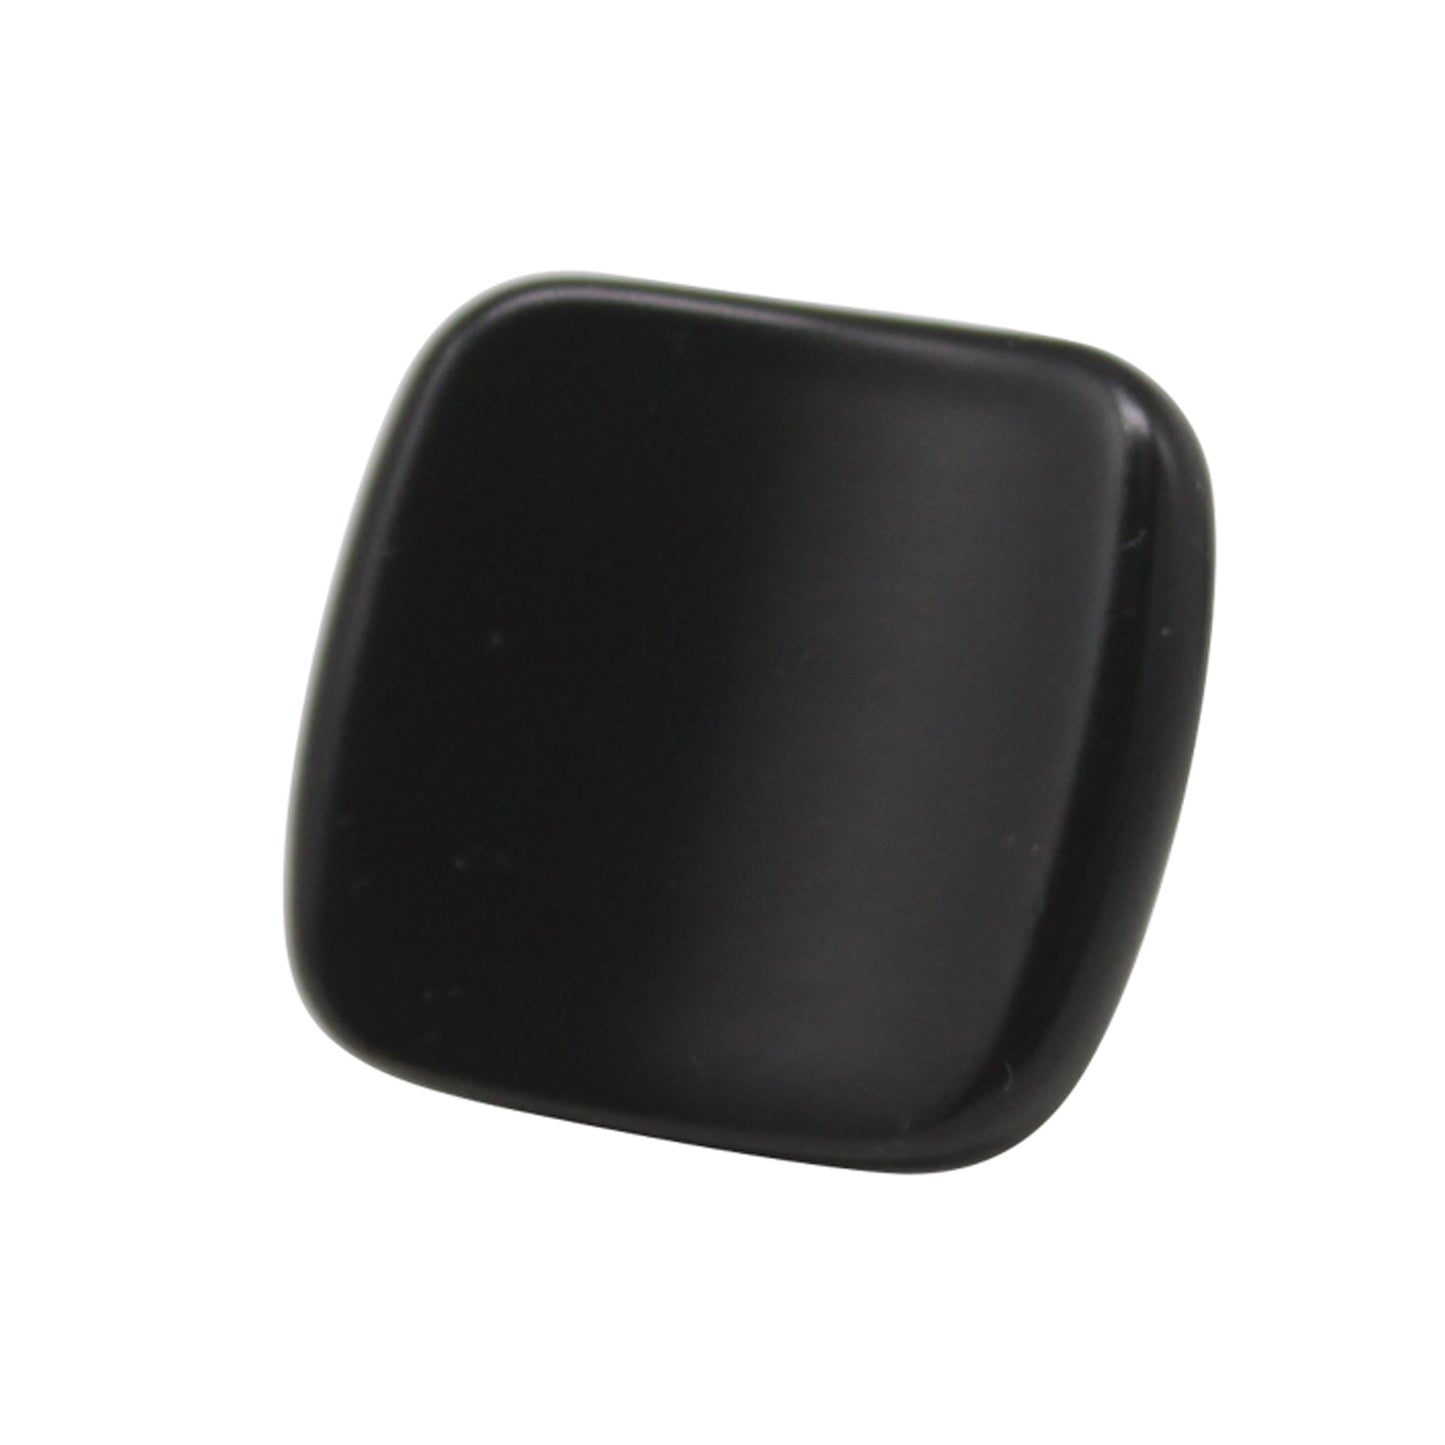 Square Concave Cabinet Knobs 1 3/16inch Oil Rubbed Bronze/Dark Black Finish PS7016 - Probrico